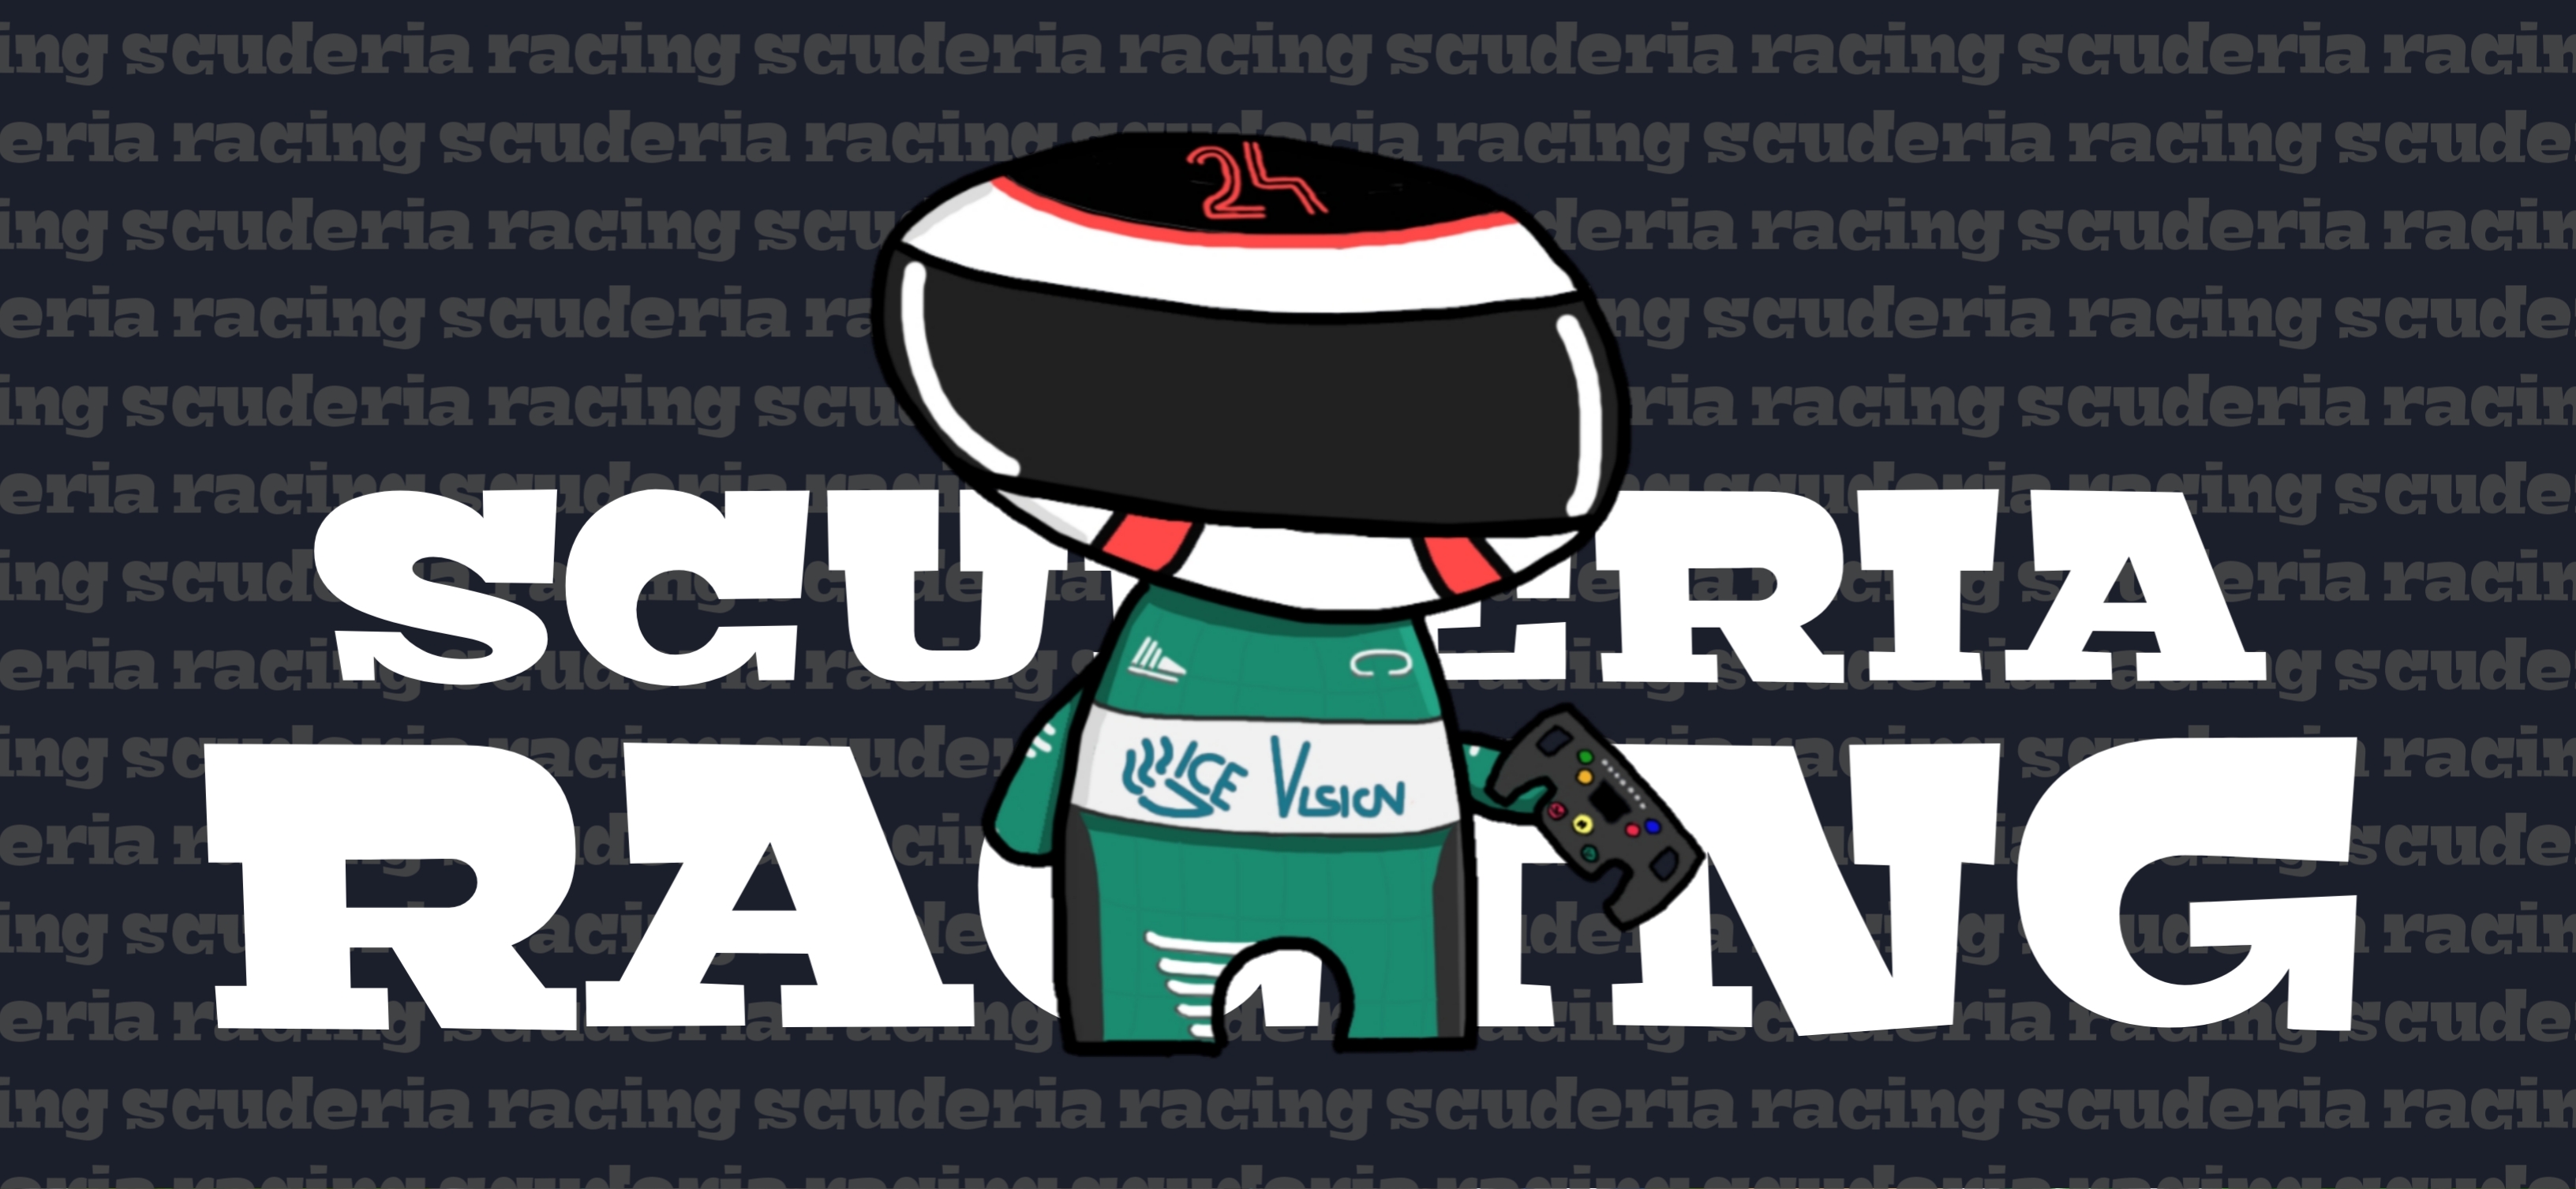 Scuderia Racing